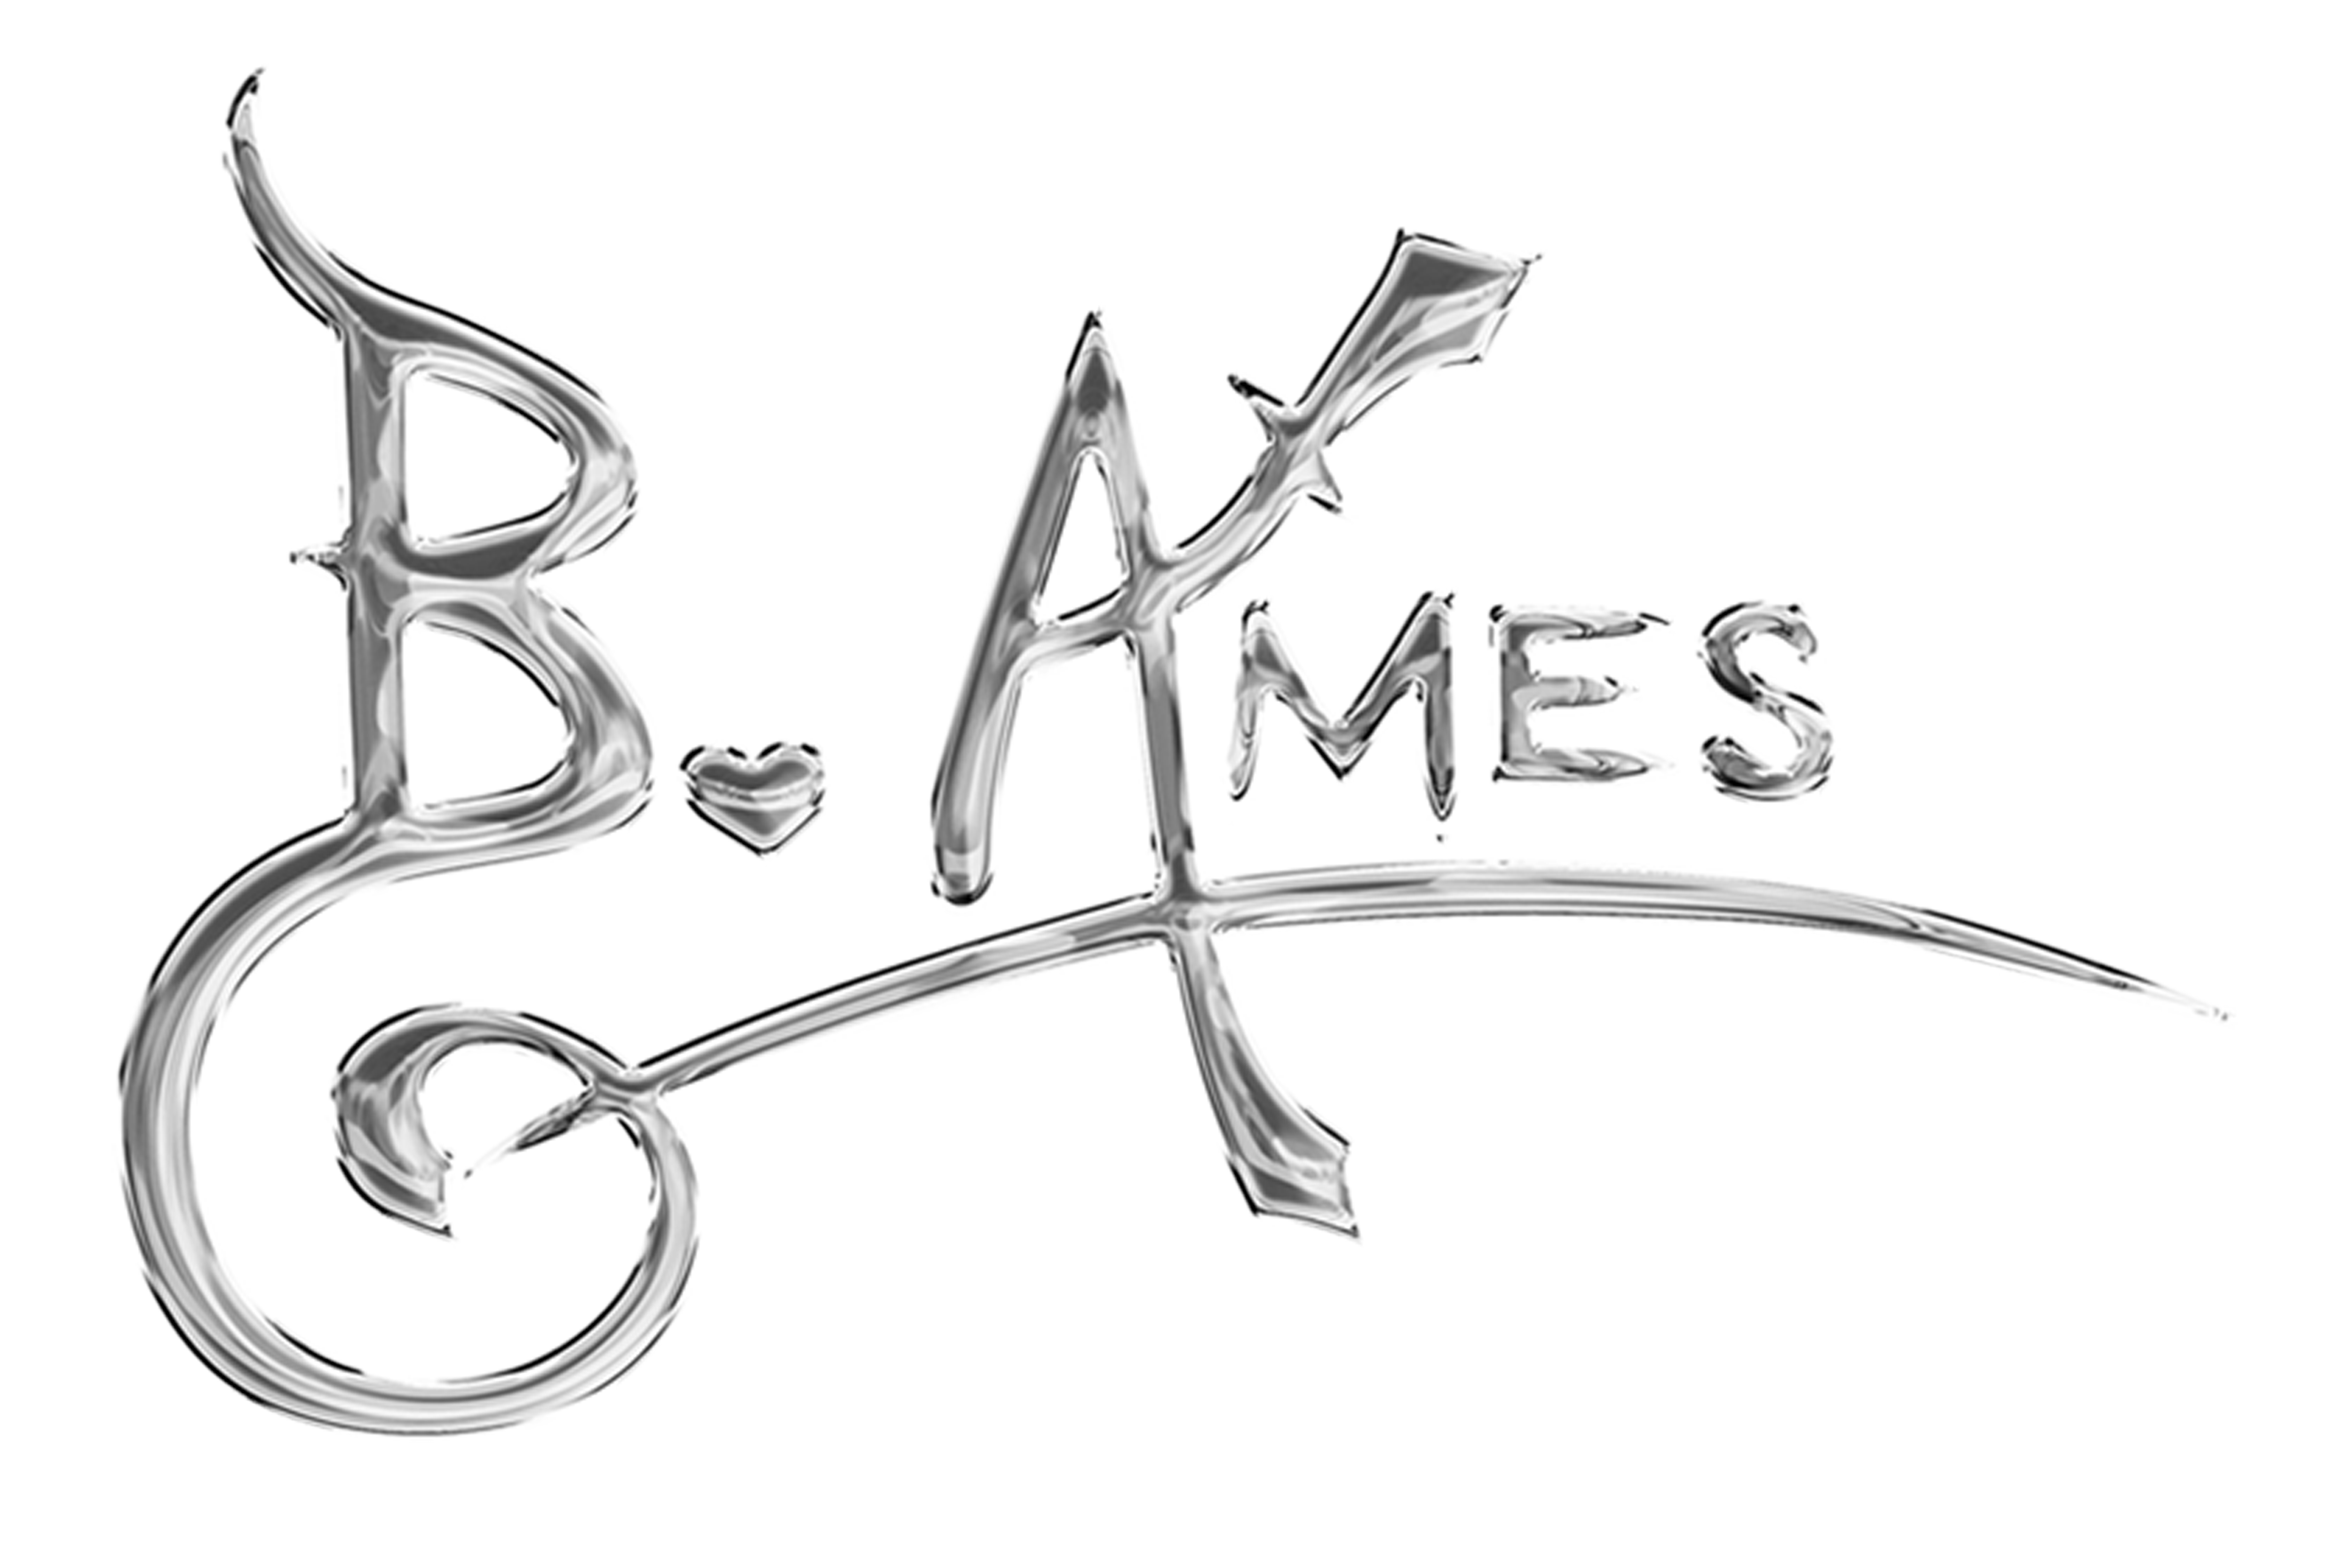 B. Ames